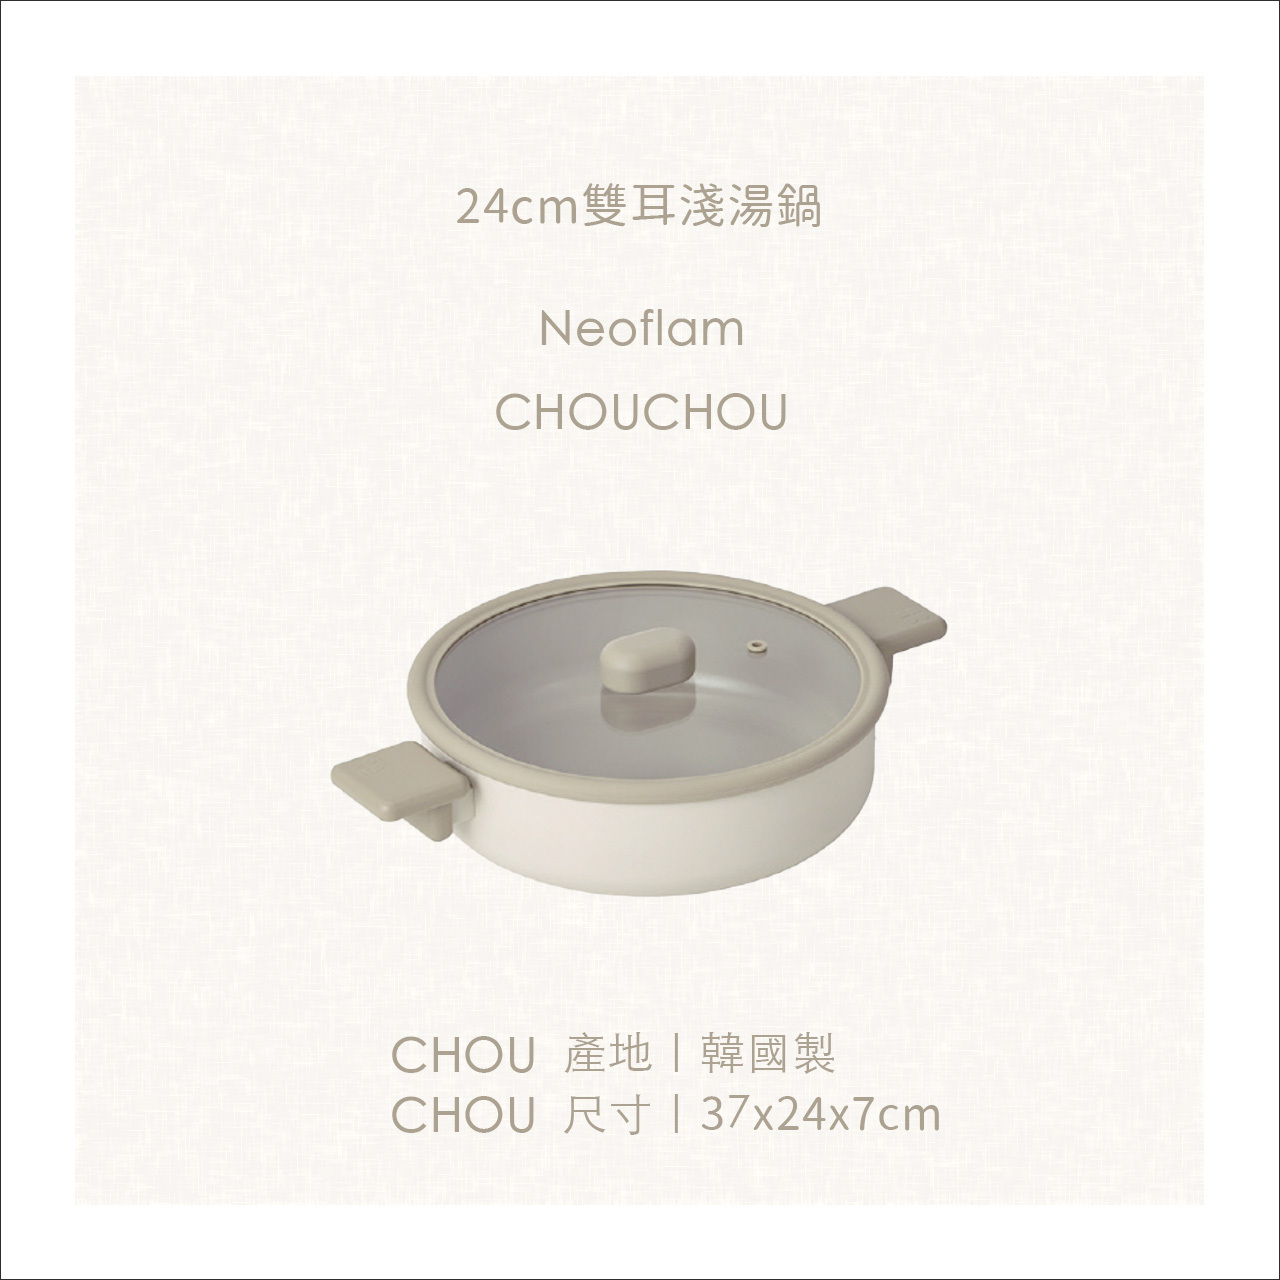 chouchou尺寸-24cm雙